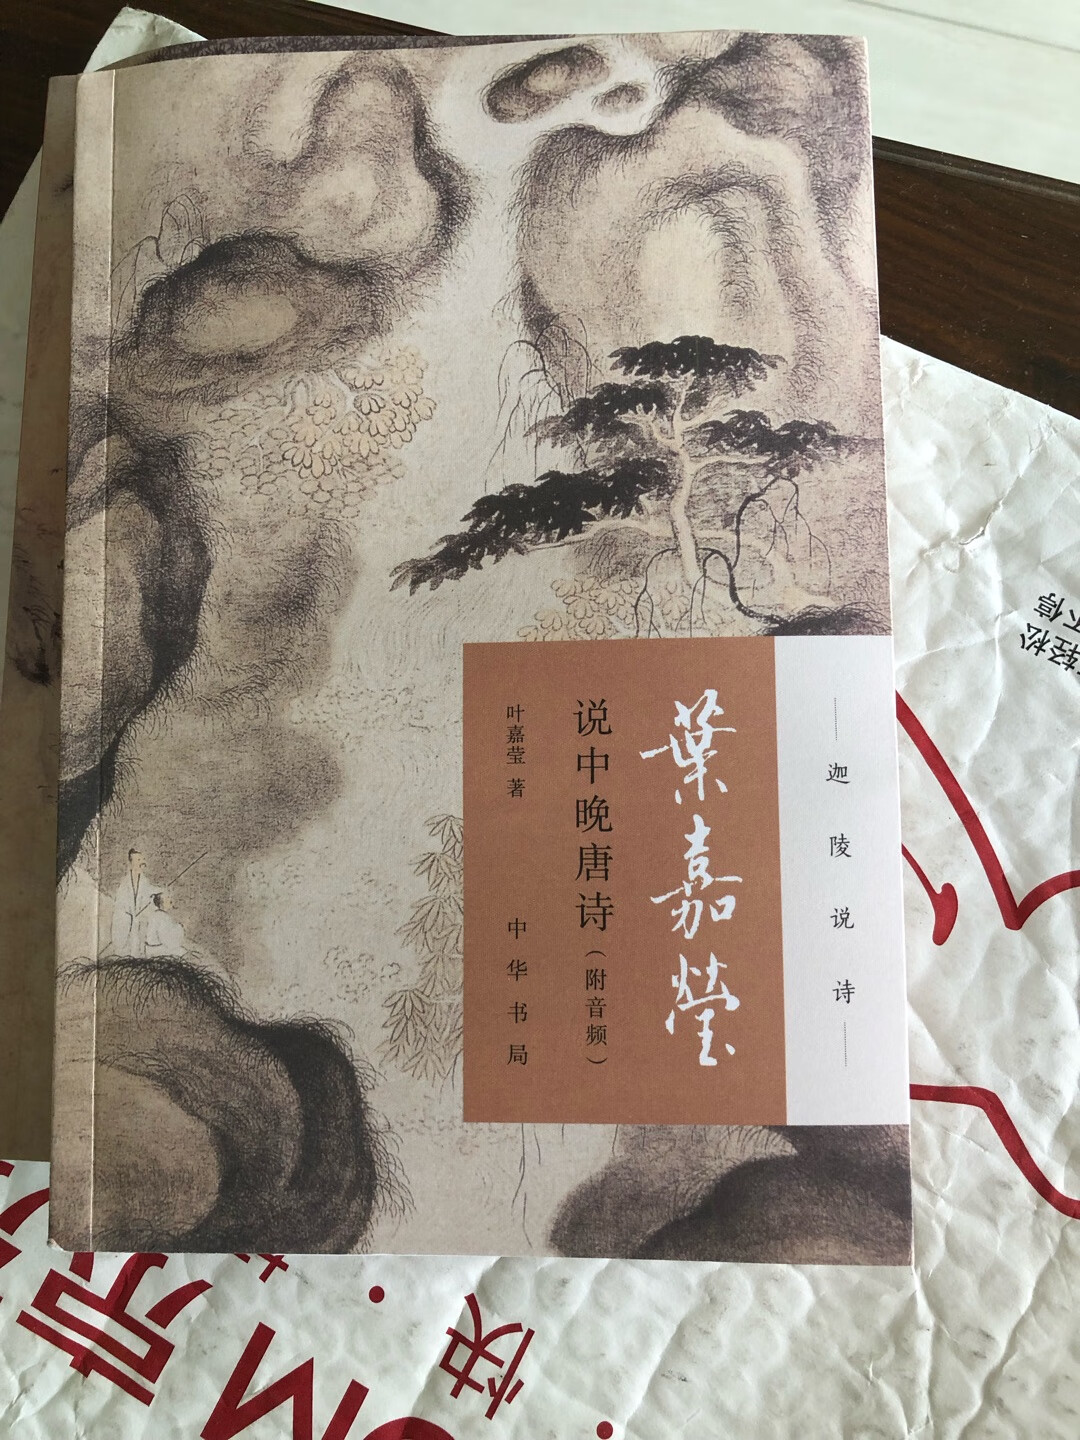 中华书局版的这一套书先买两本过来看看。一直相信中华书局的质量。